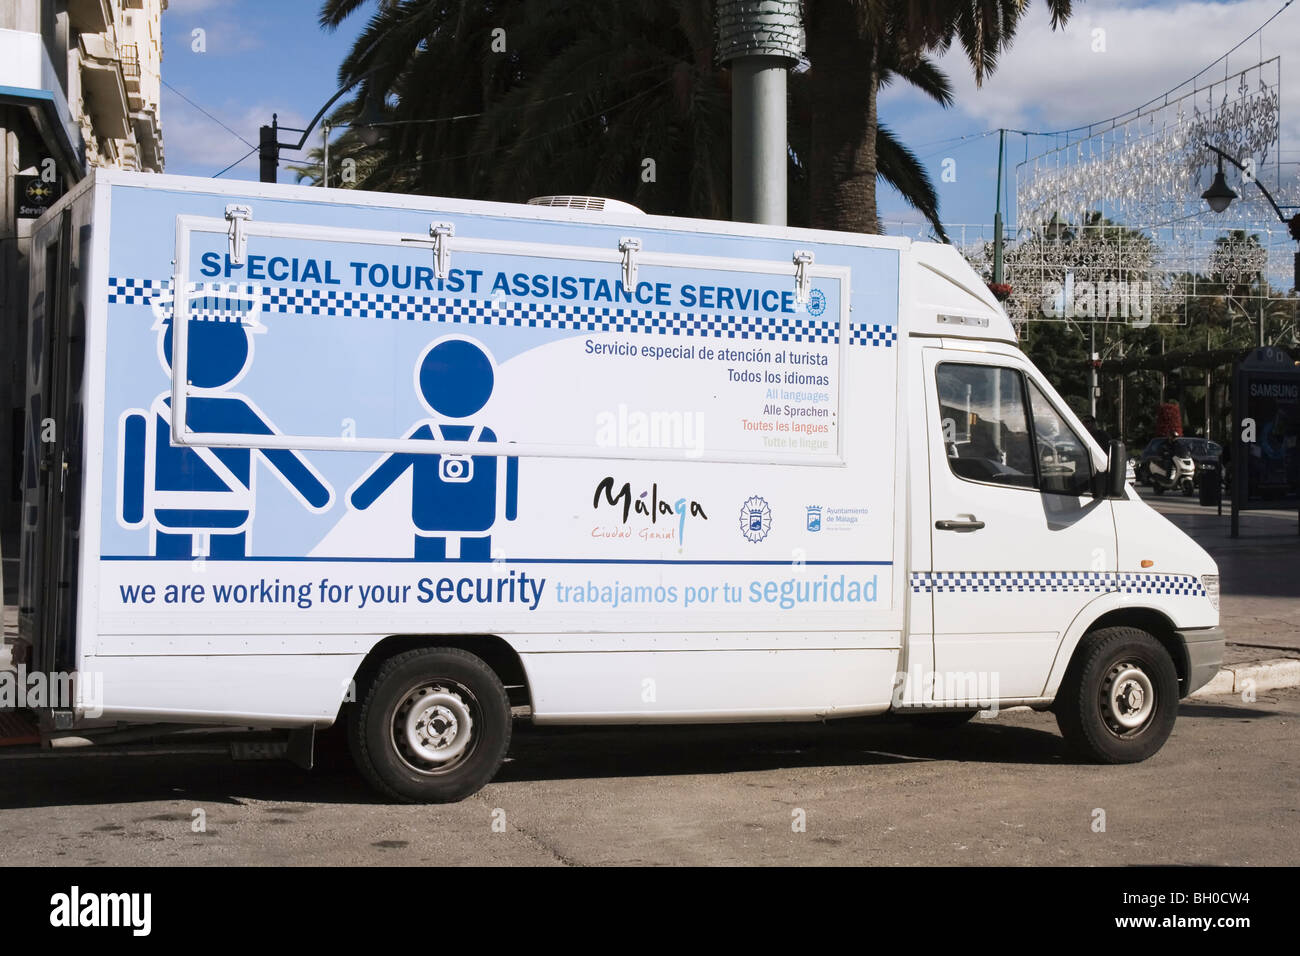 Malaga, Costa Del Sol, Spanien. Spezielle touristische Assistance Service van geparkt in der Innenstadt. Stockfoto